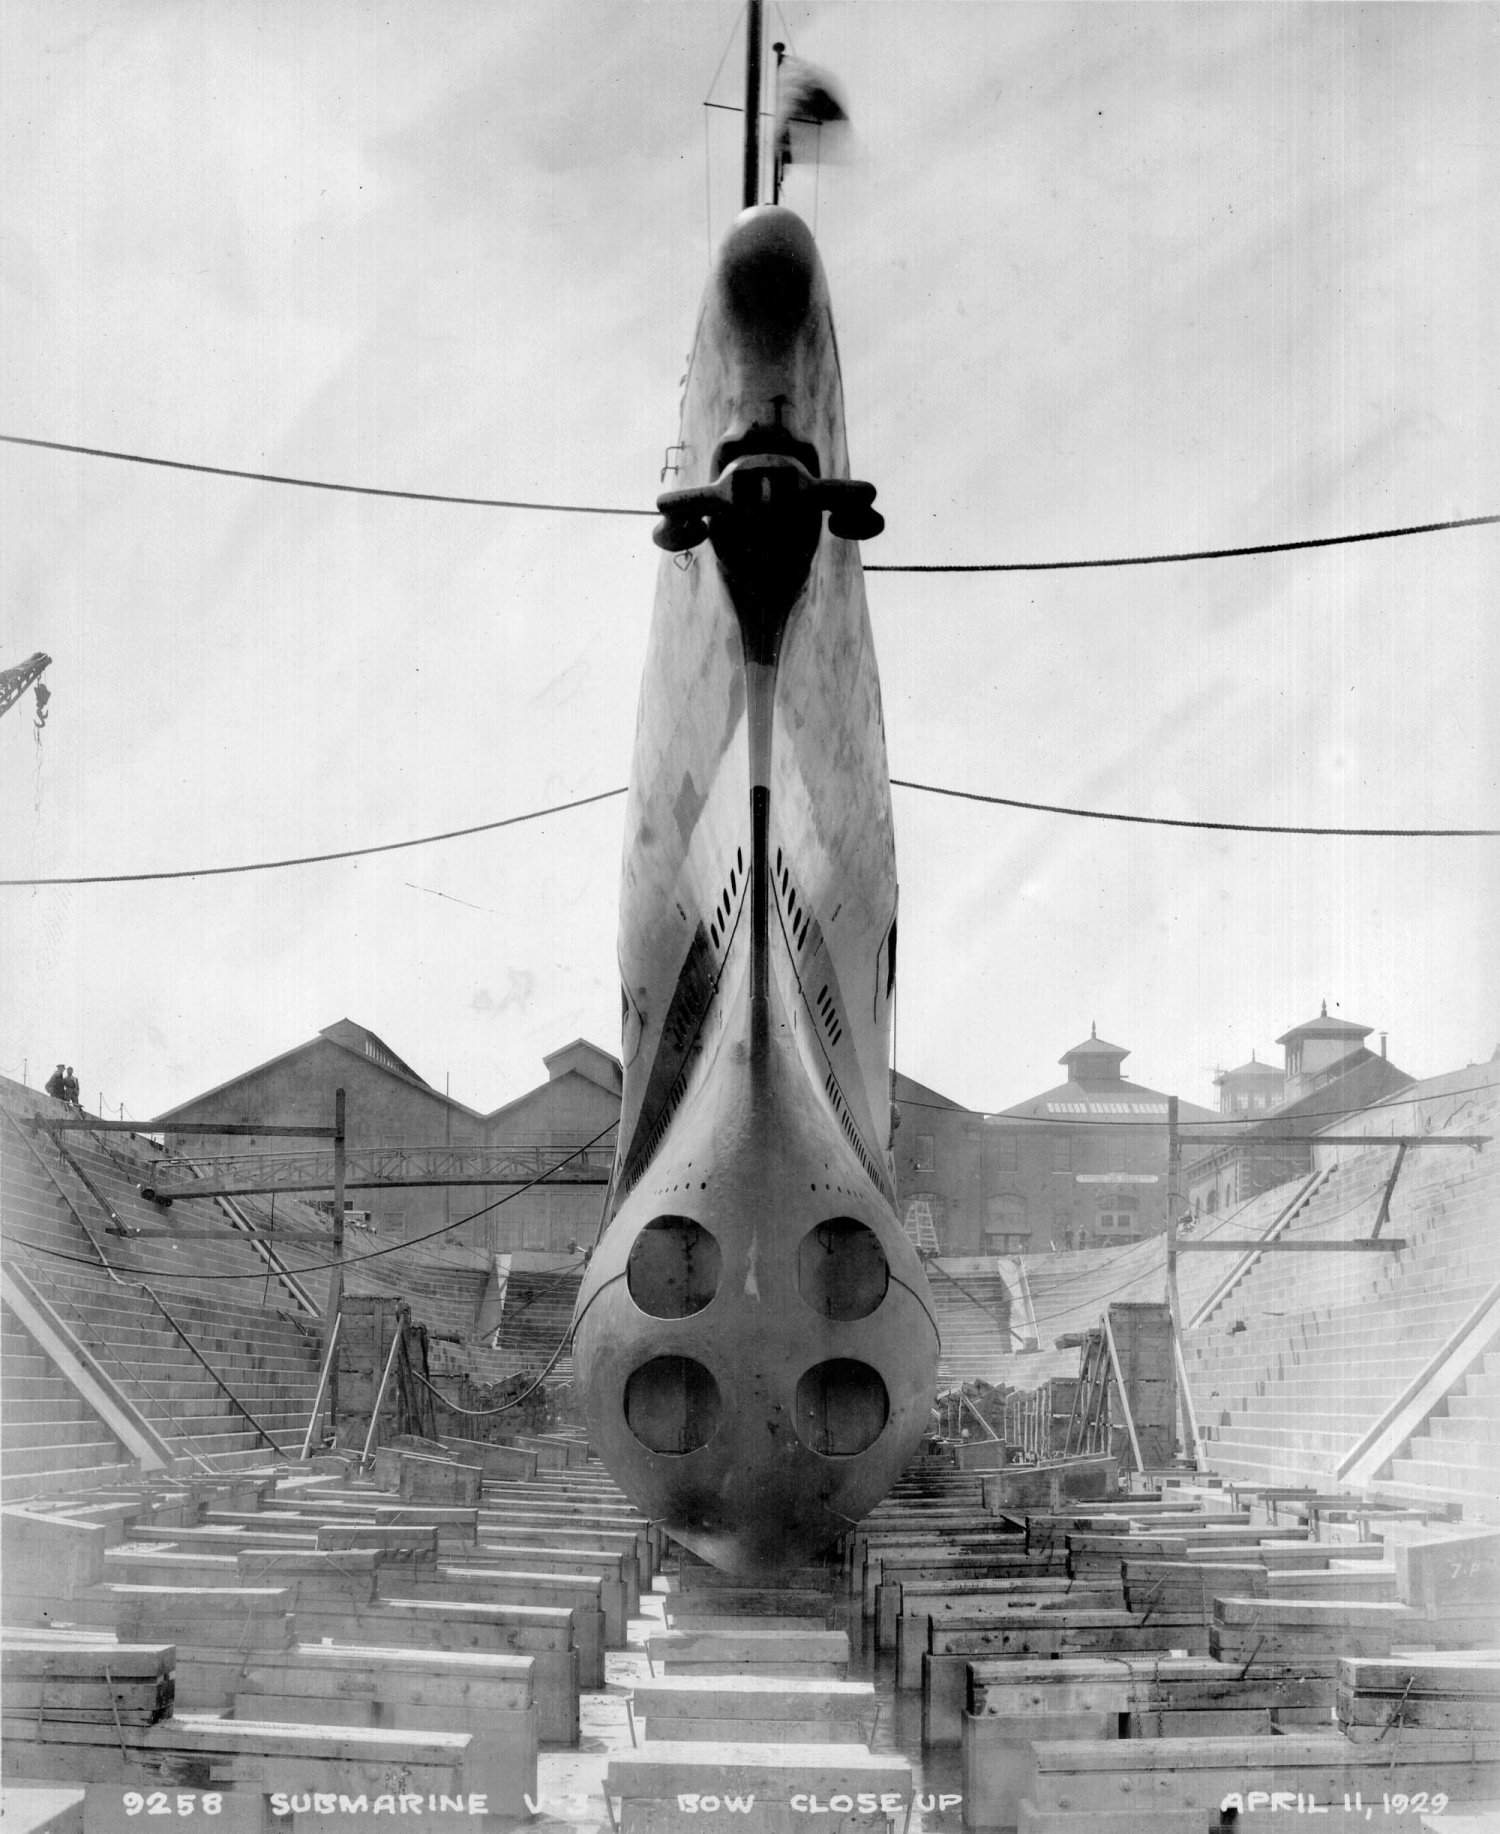 V-3 in Mare Island Drydock 1, April 11, 1929.jpg